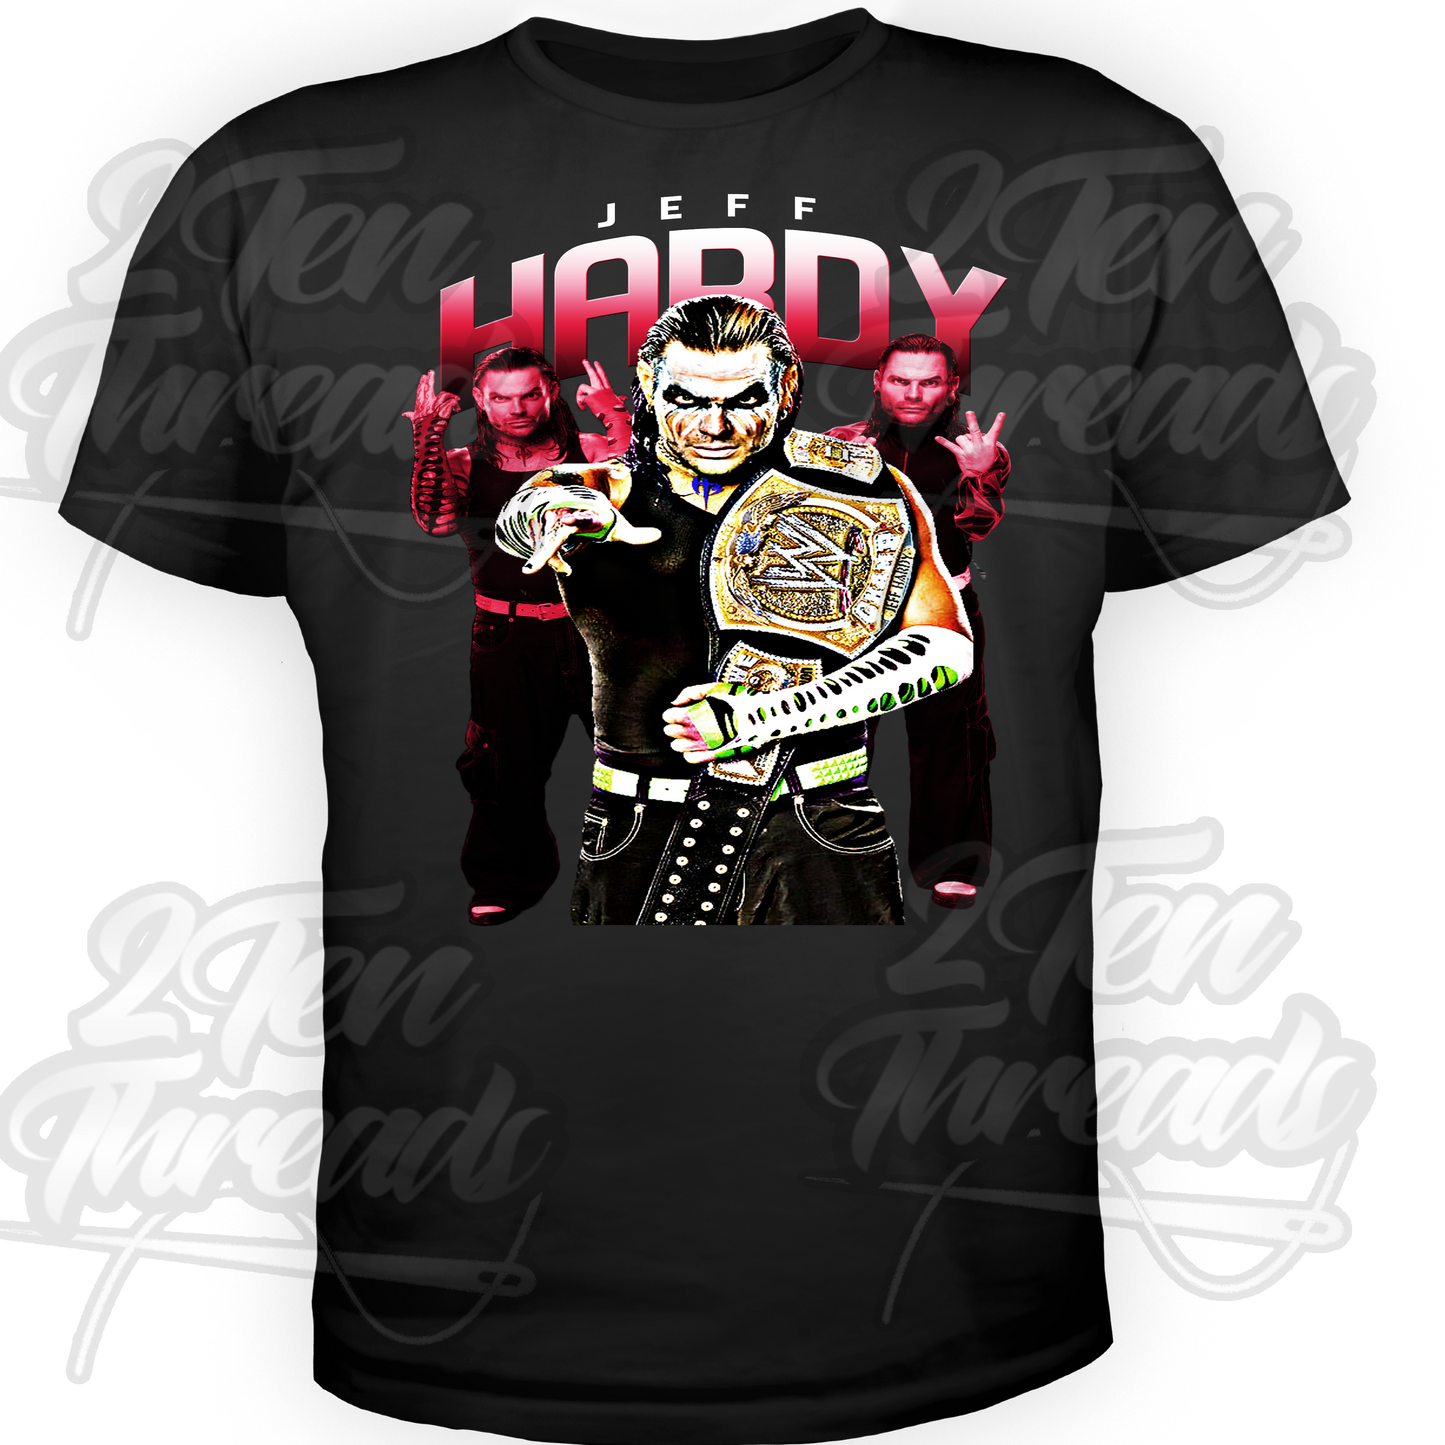 Jeff Hardy Shirt